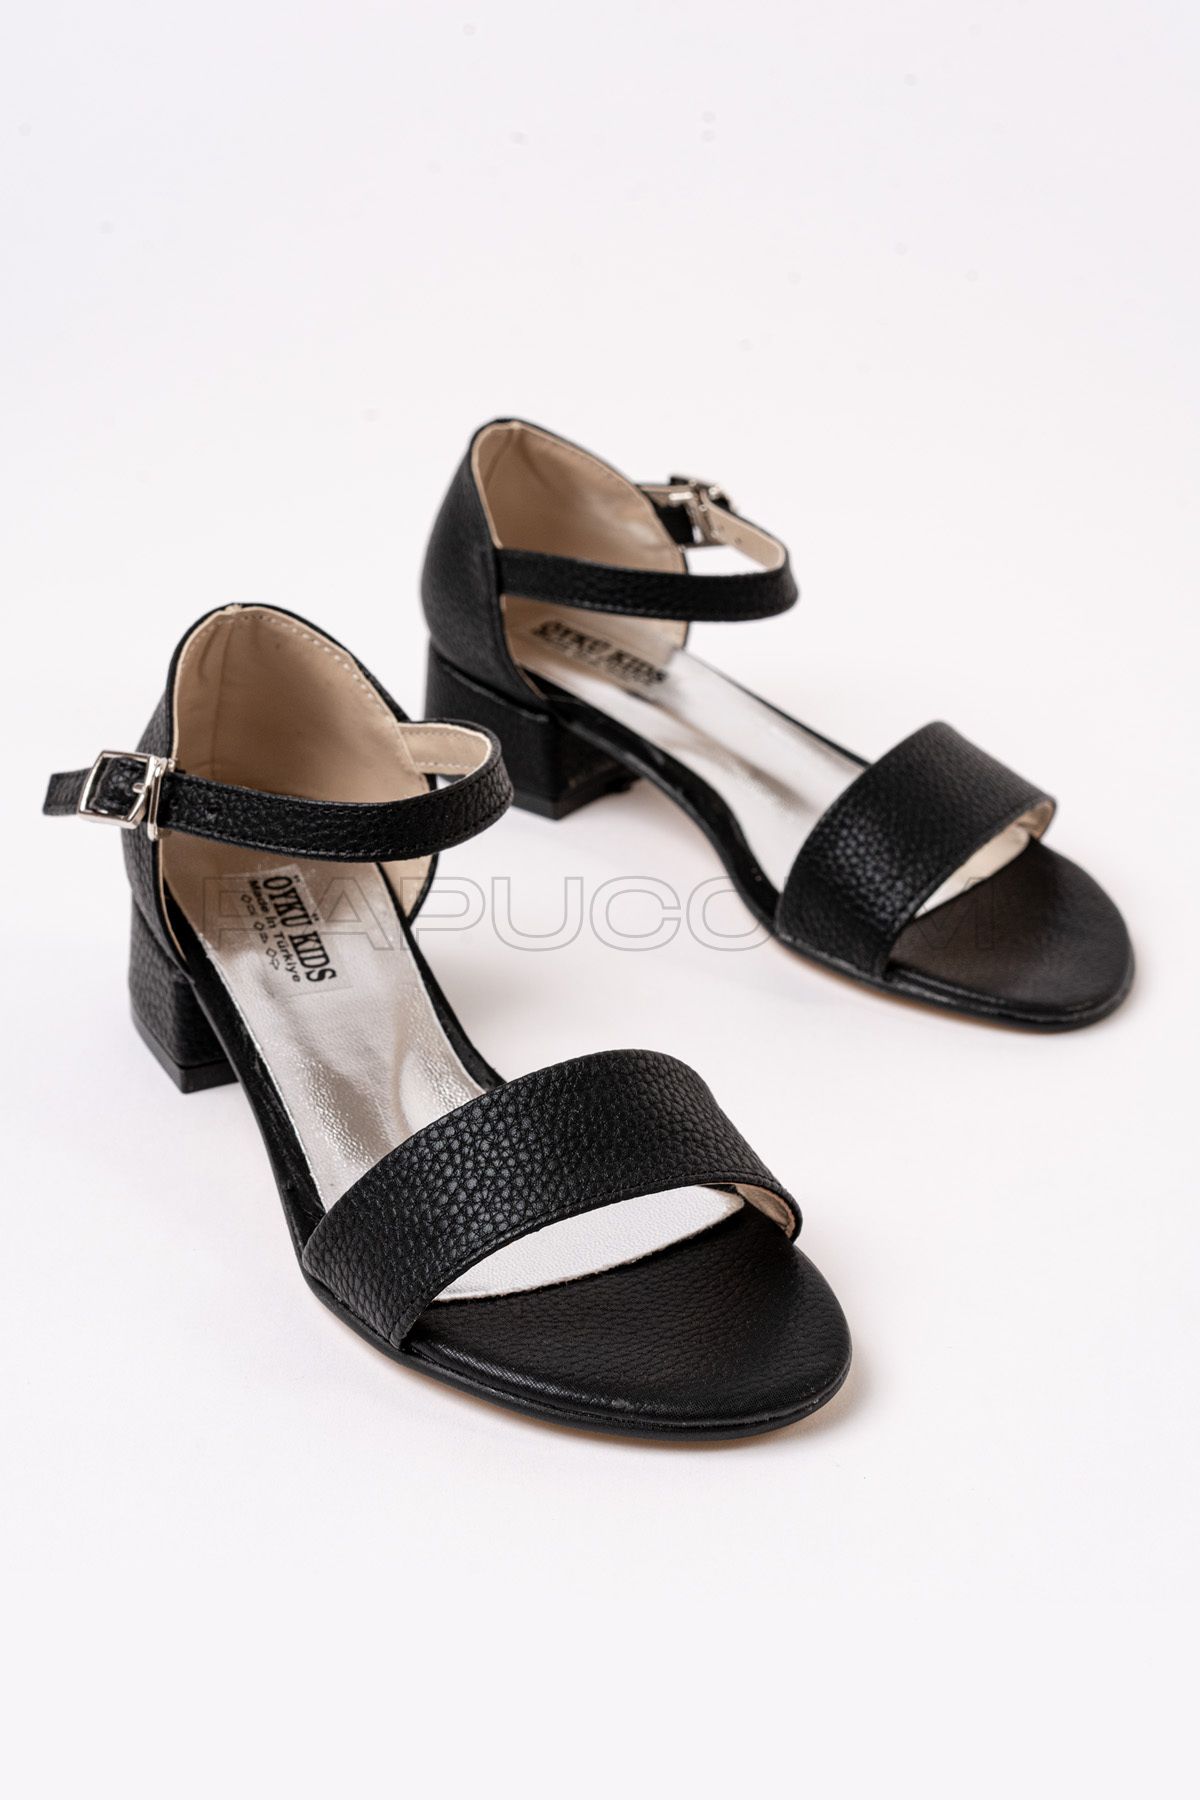 p papuccum ortopedi çocuk ayakkabıları Kız Çocuk Siyah Günlük Topuklu Abiye Ayakkabı